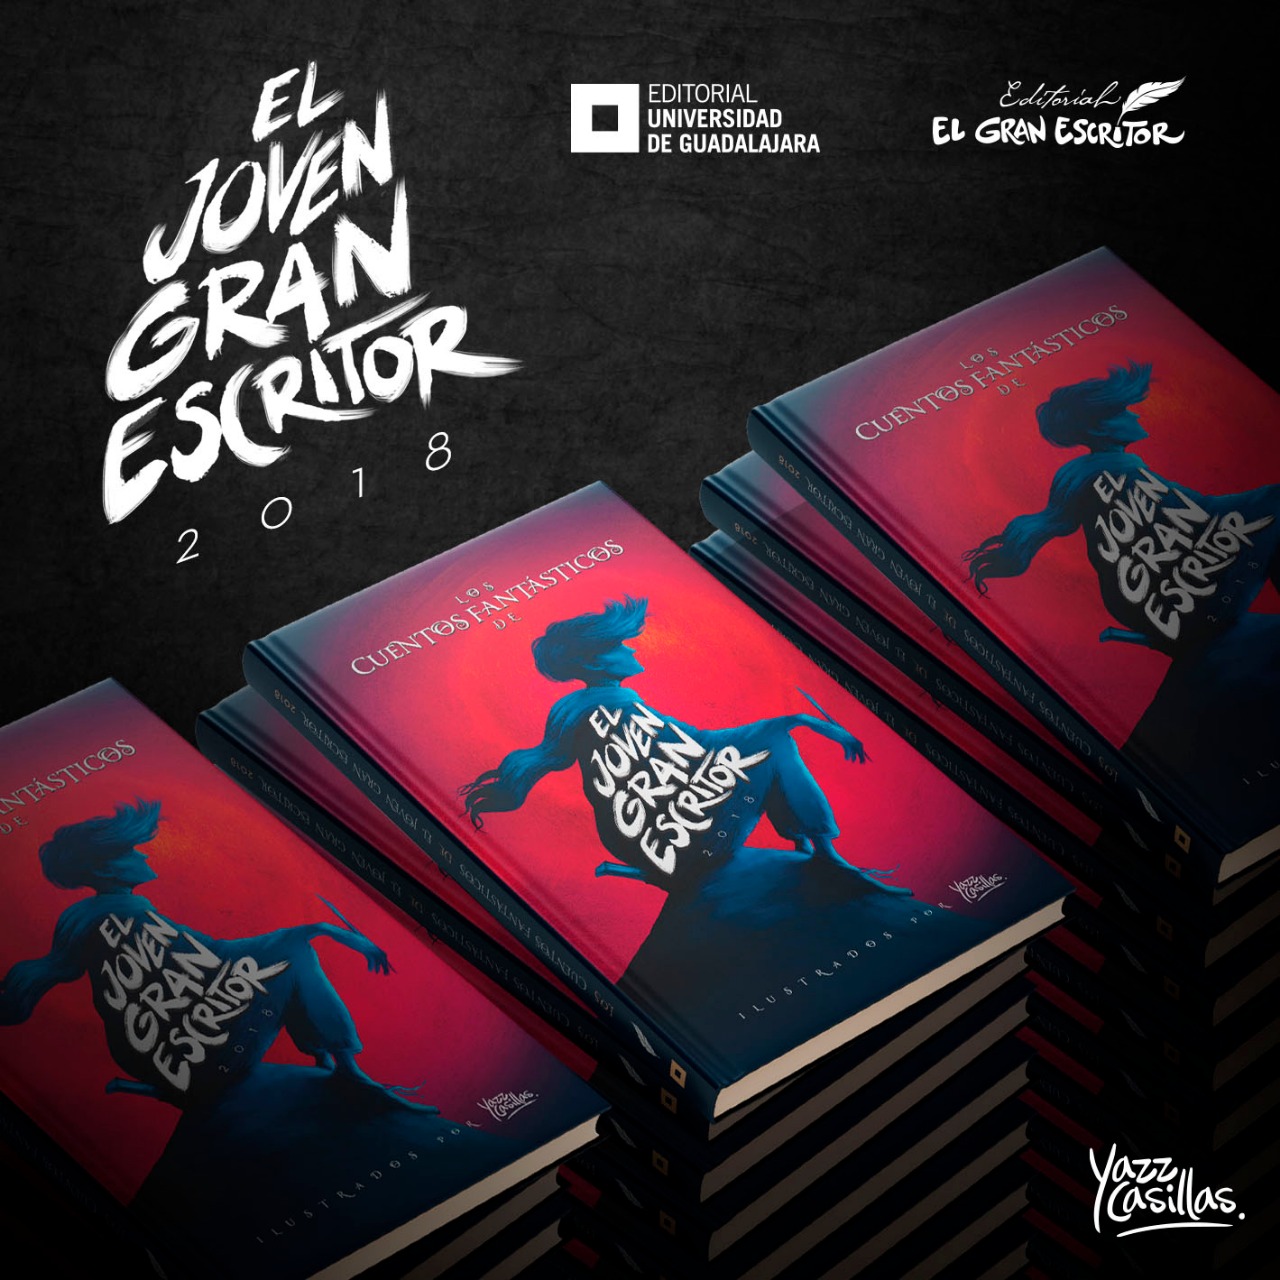 EL JOVEN GRAN ESCRITOR - El Expresso de las Diez - Vie 29 Nov 2019